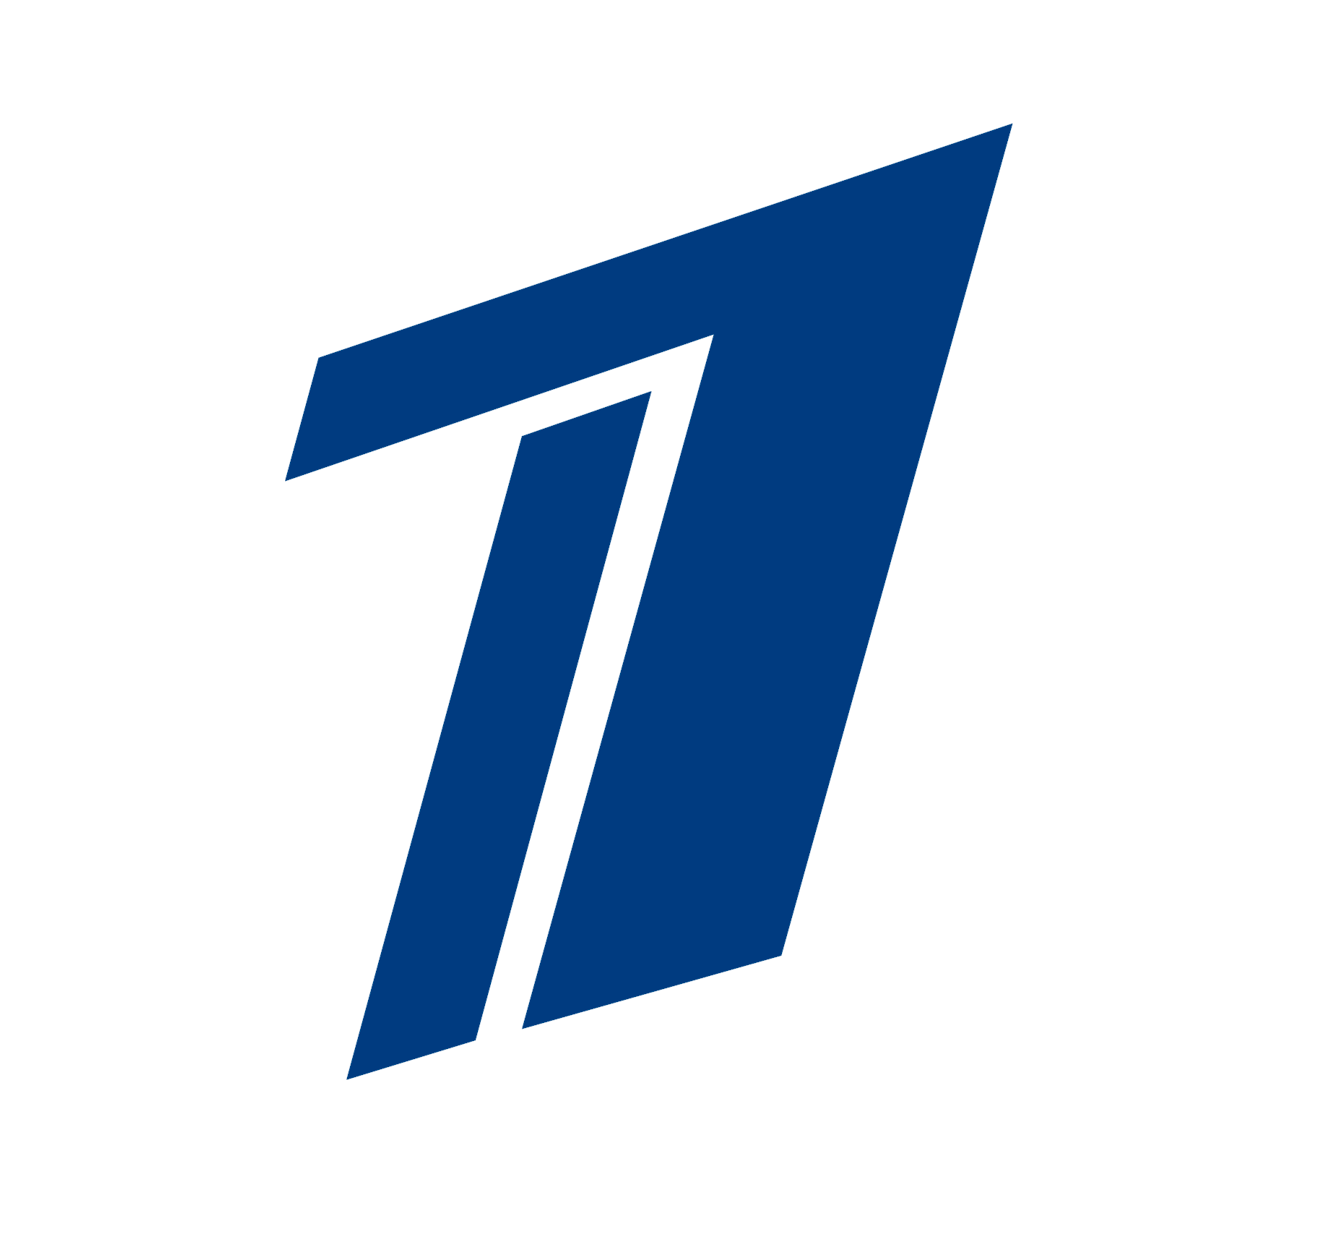 24 1 2016. Первый канал логотип. Логотип первого канала 2000. Первый канал 2014 логотип. Прозрачный логотип первого канала.